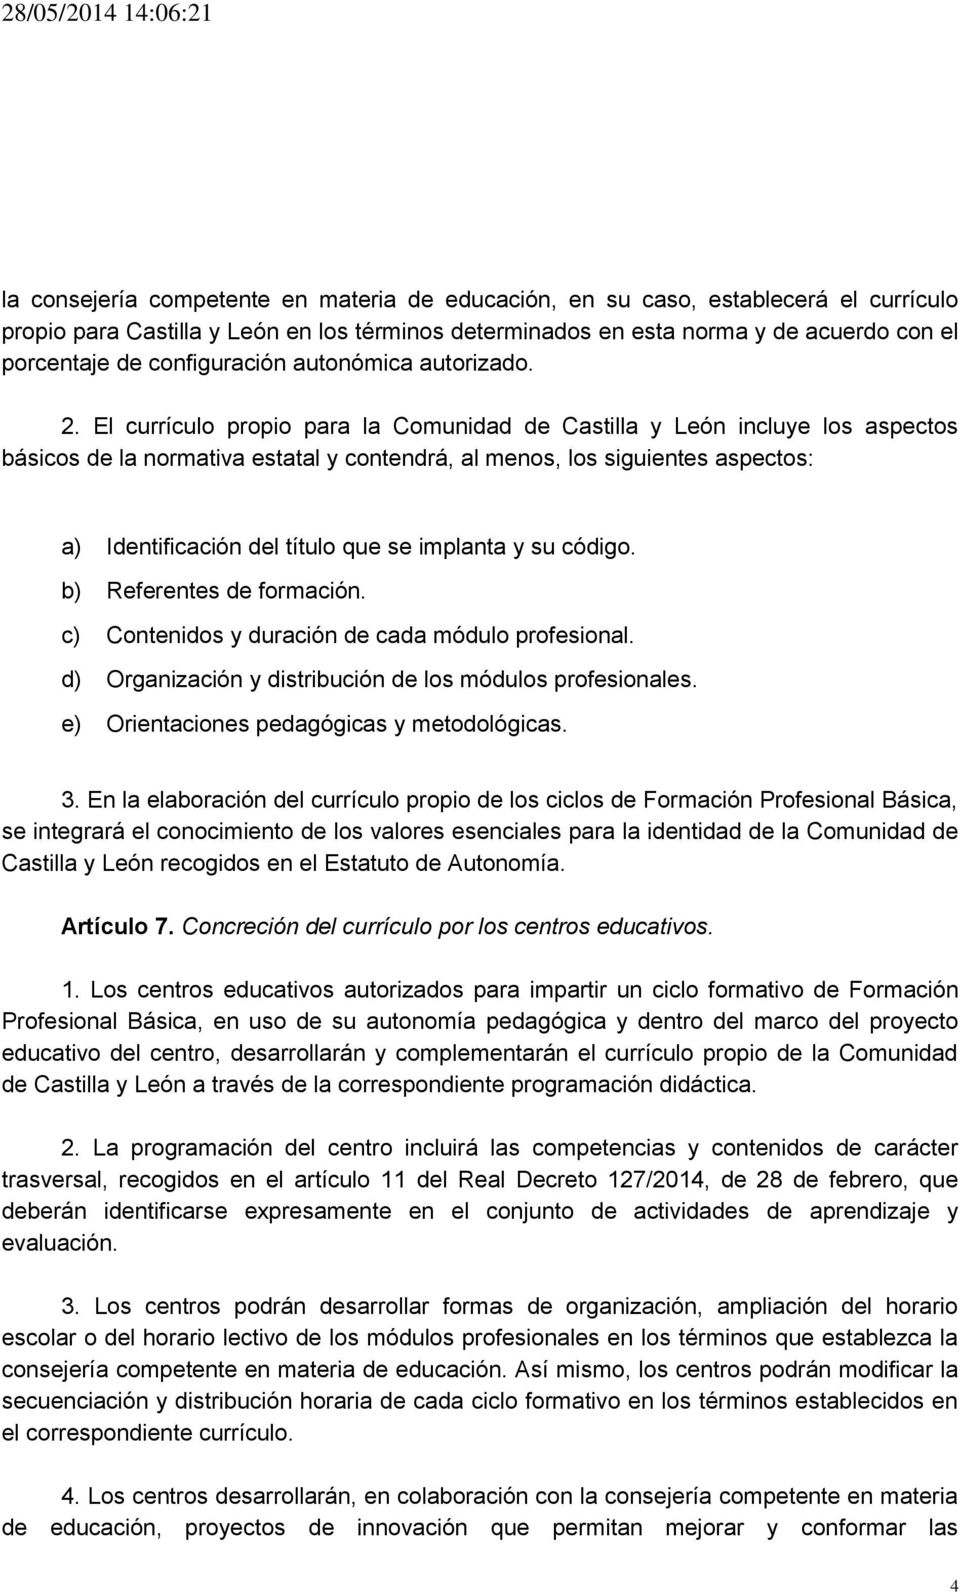 El currículo propio para la Comunidad de Castilla y León incluye los aspectos básicos de la normativa estatal y contendrá, al menos, los siguientes aspectos: a) Identificación del título que se